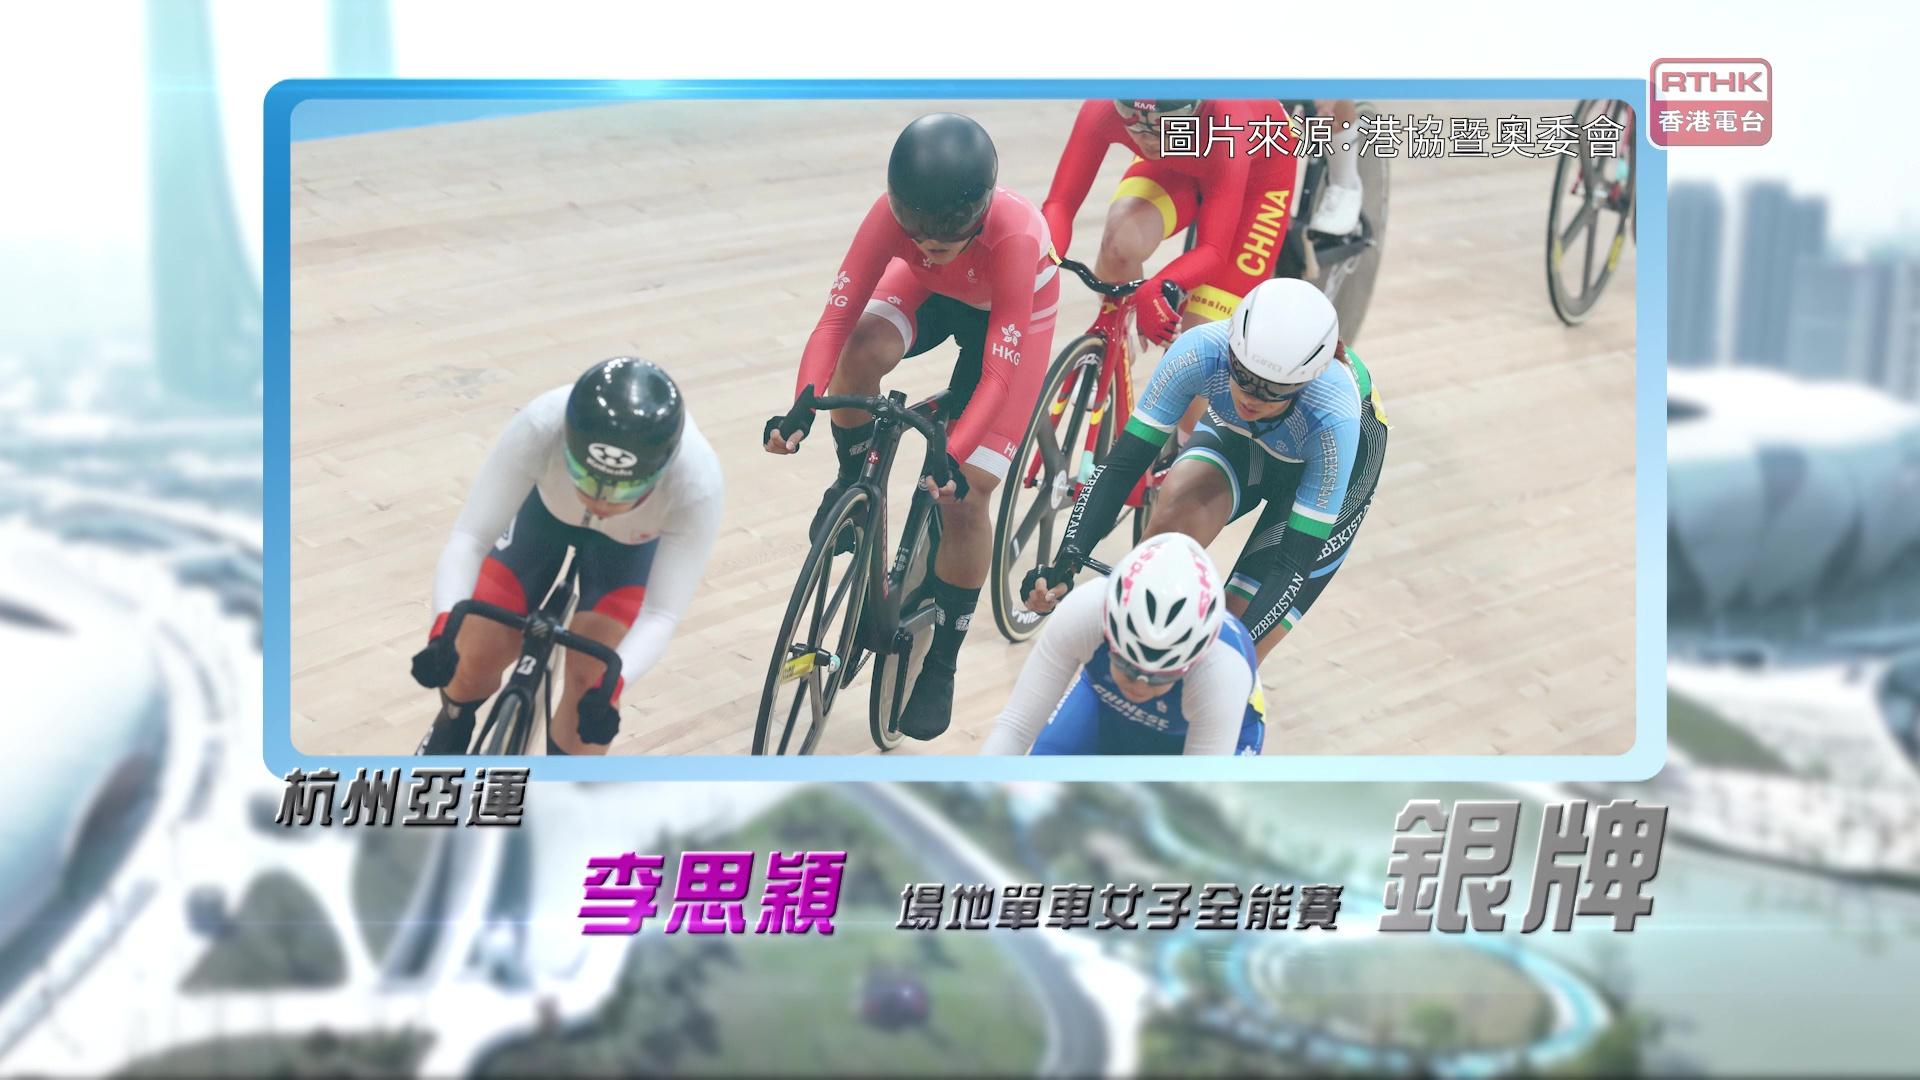 恭喜李思颖于杭州亚运场地单车女子全能赛夺得银牌！